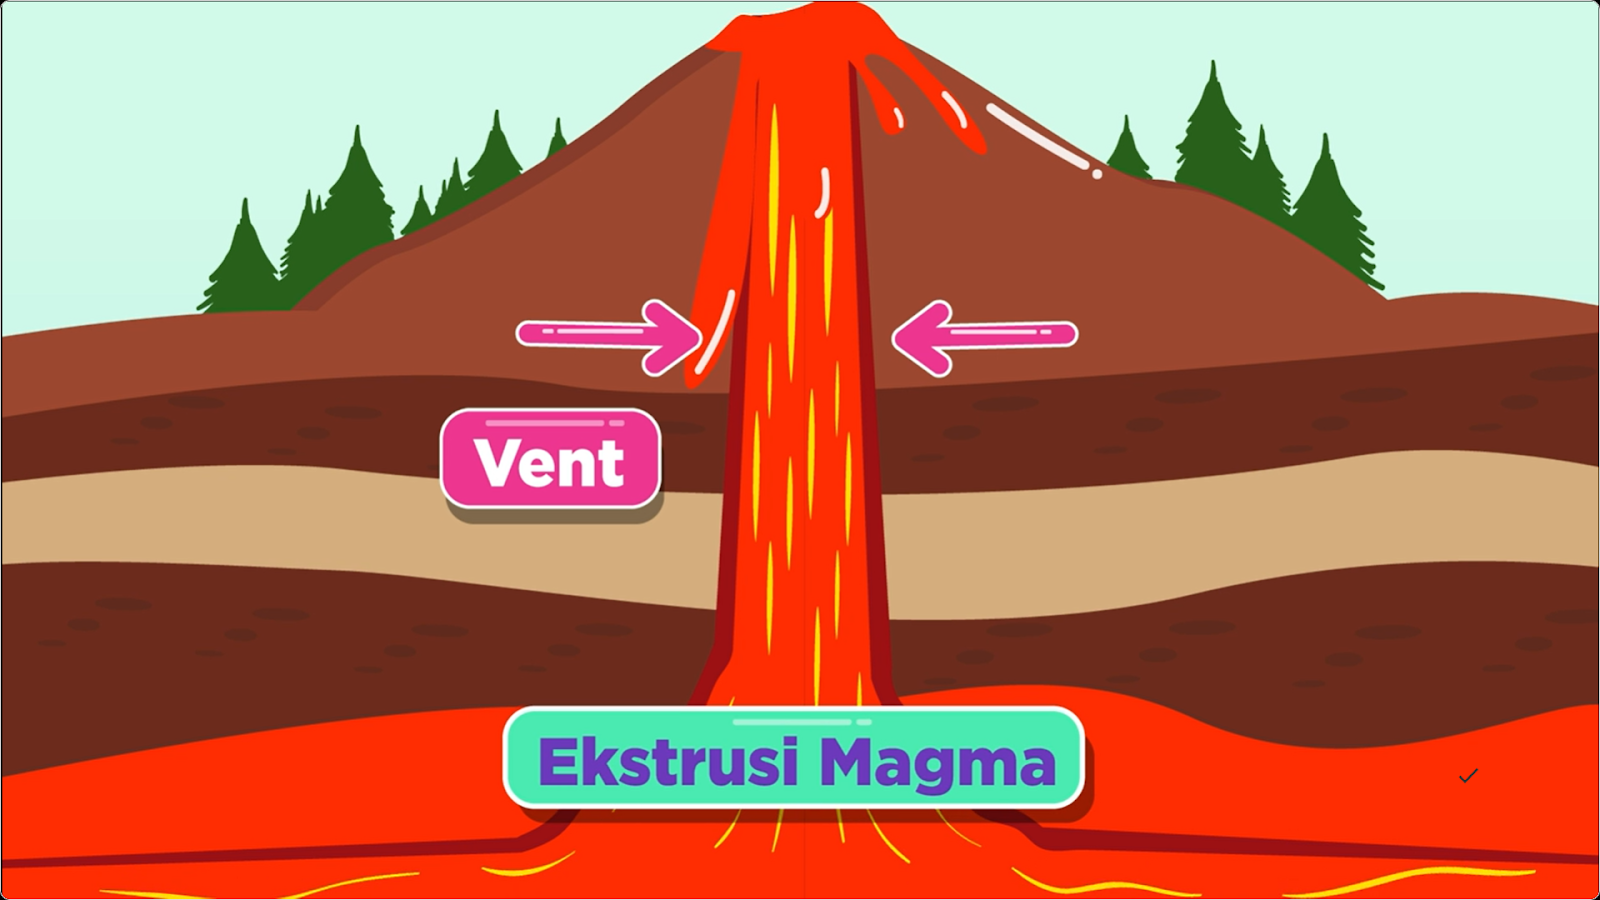 Ekstrusi magma adalah peristiwa keluarnya magma yang mencapai ke permukaan bumi.